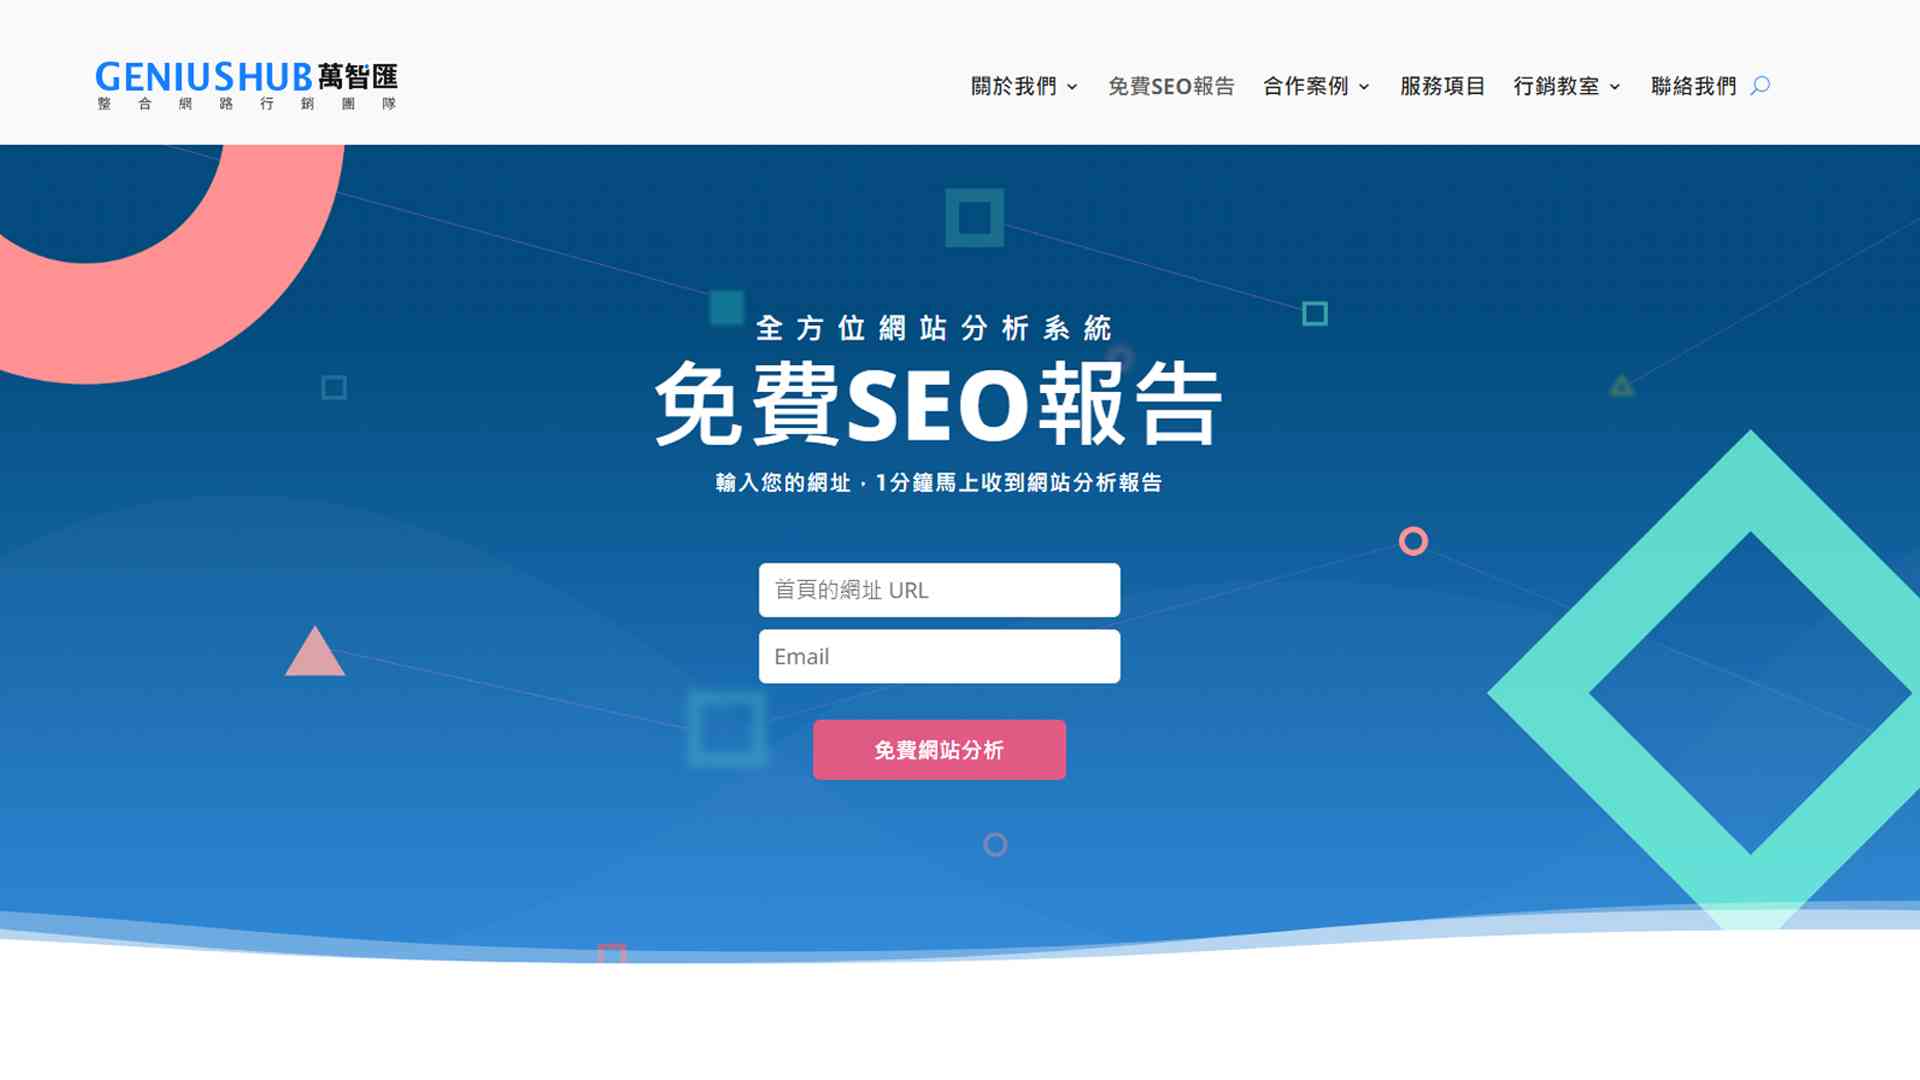 網站健全嗎？透過免費SEO檢測工具，讓網站在激烈的競爭者中脫穎而出！ - 早安台灣新聞 | Morning Taiwan News